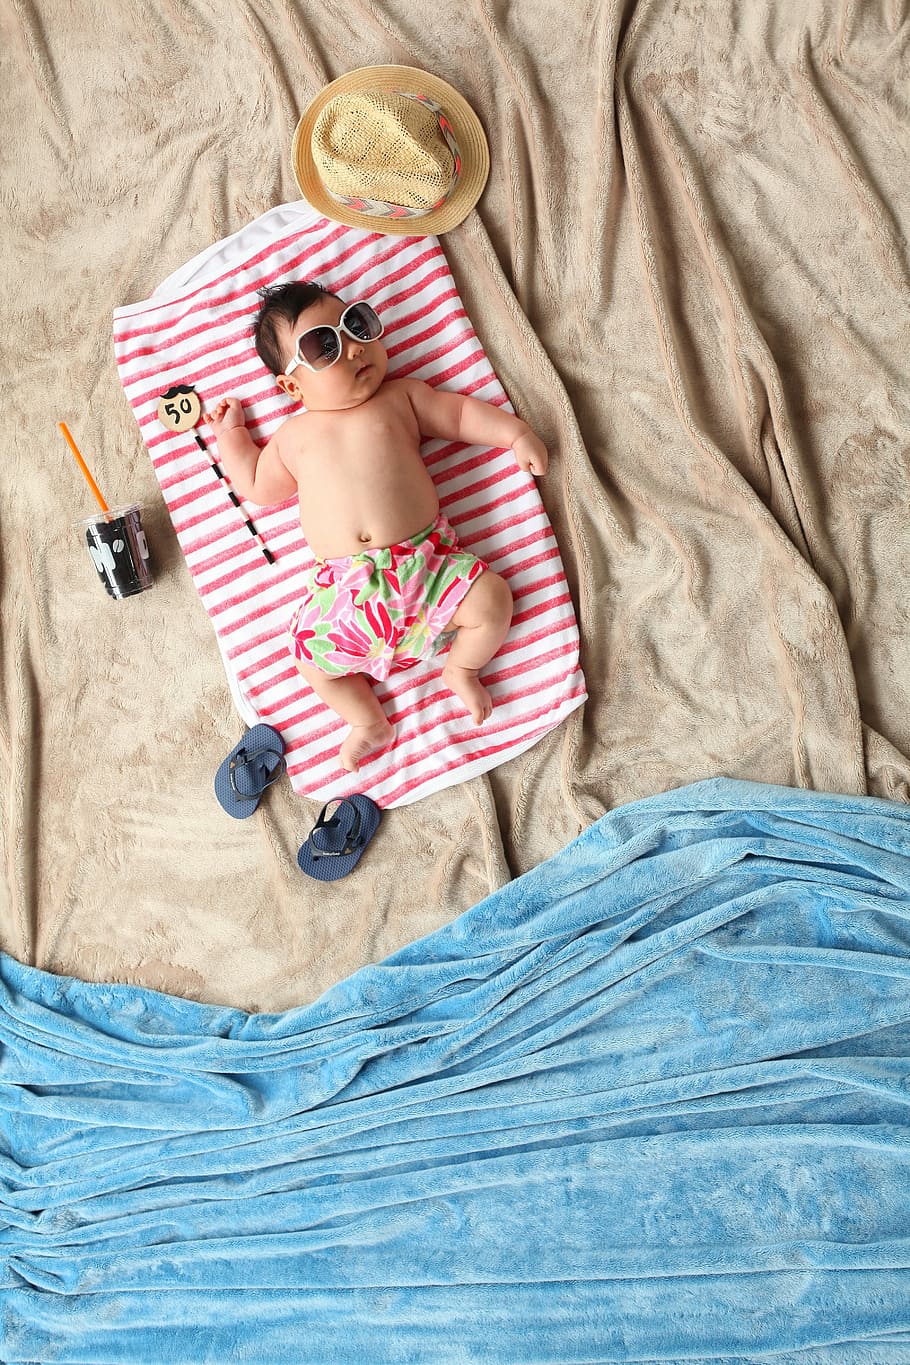 bayi, berbaring, merah, putih, selimut, fotografi bertema musim panas, musim panas, pantai, 50 hari, nyaman